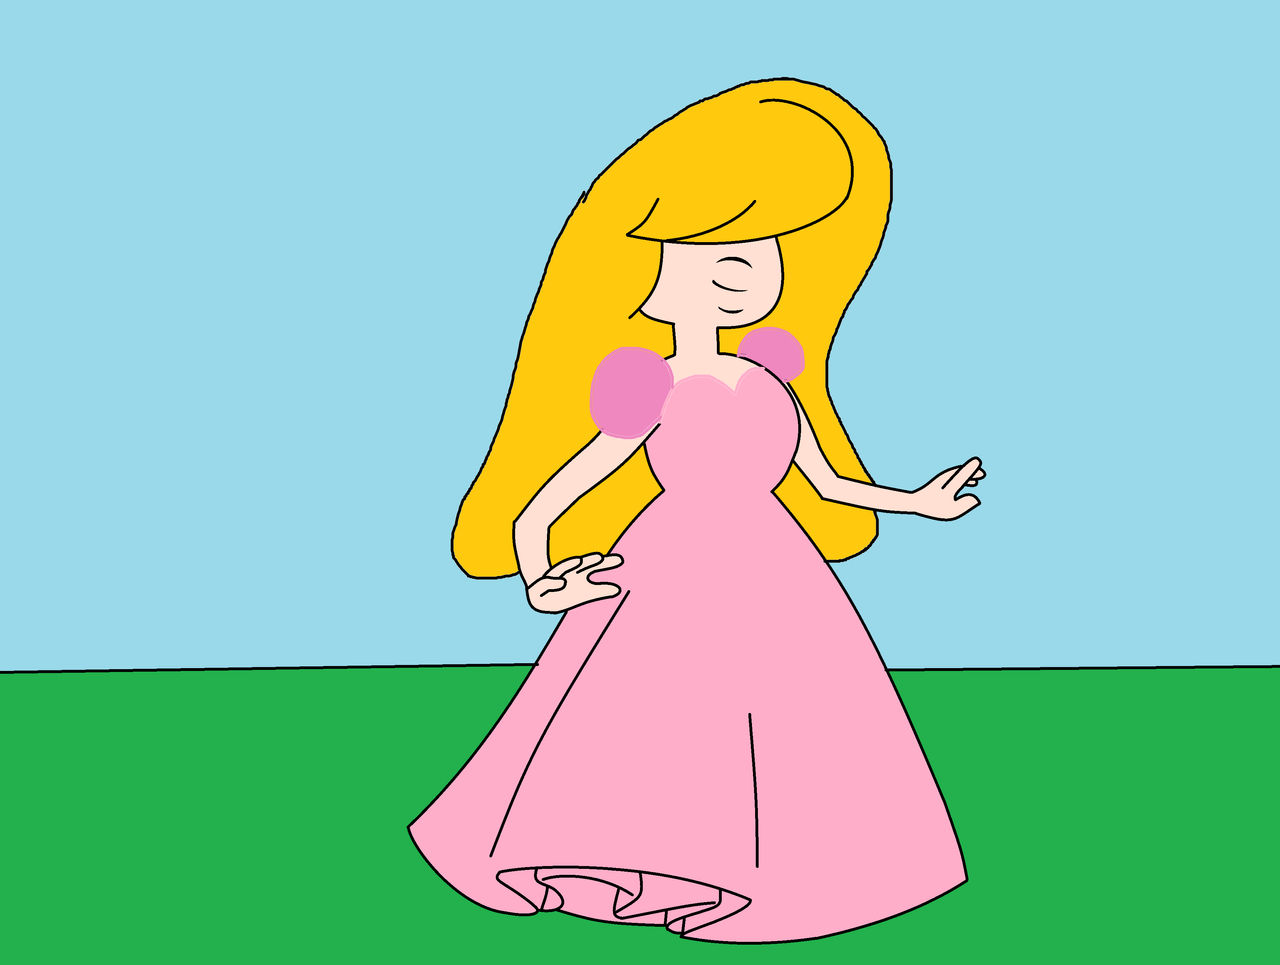 Princess Peach as a Gem by Disneyponyfan on DeviantArt